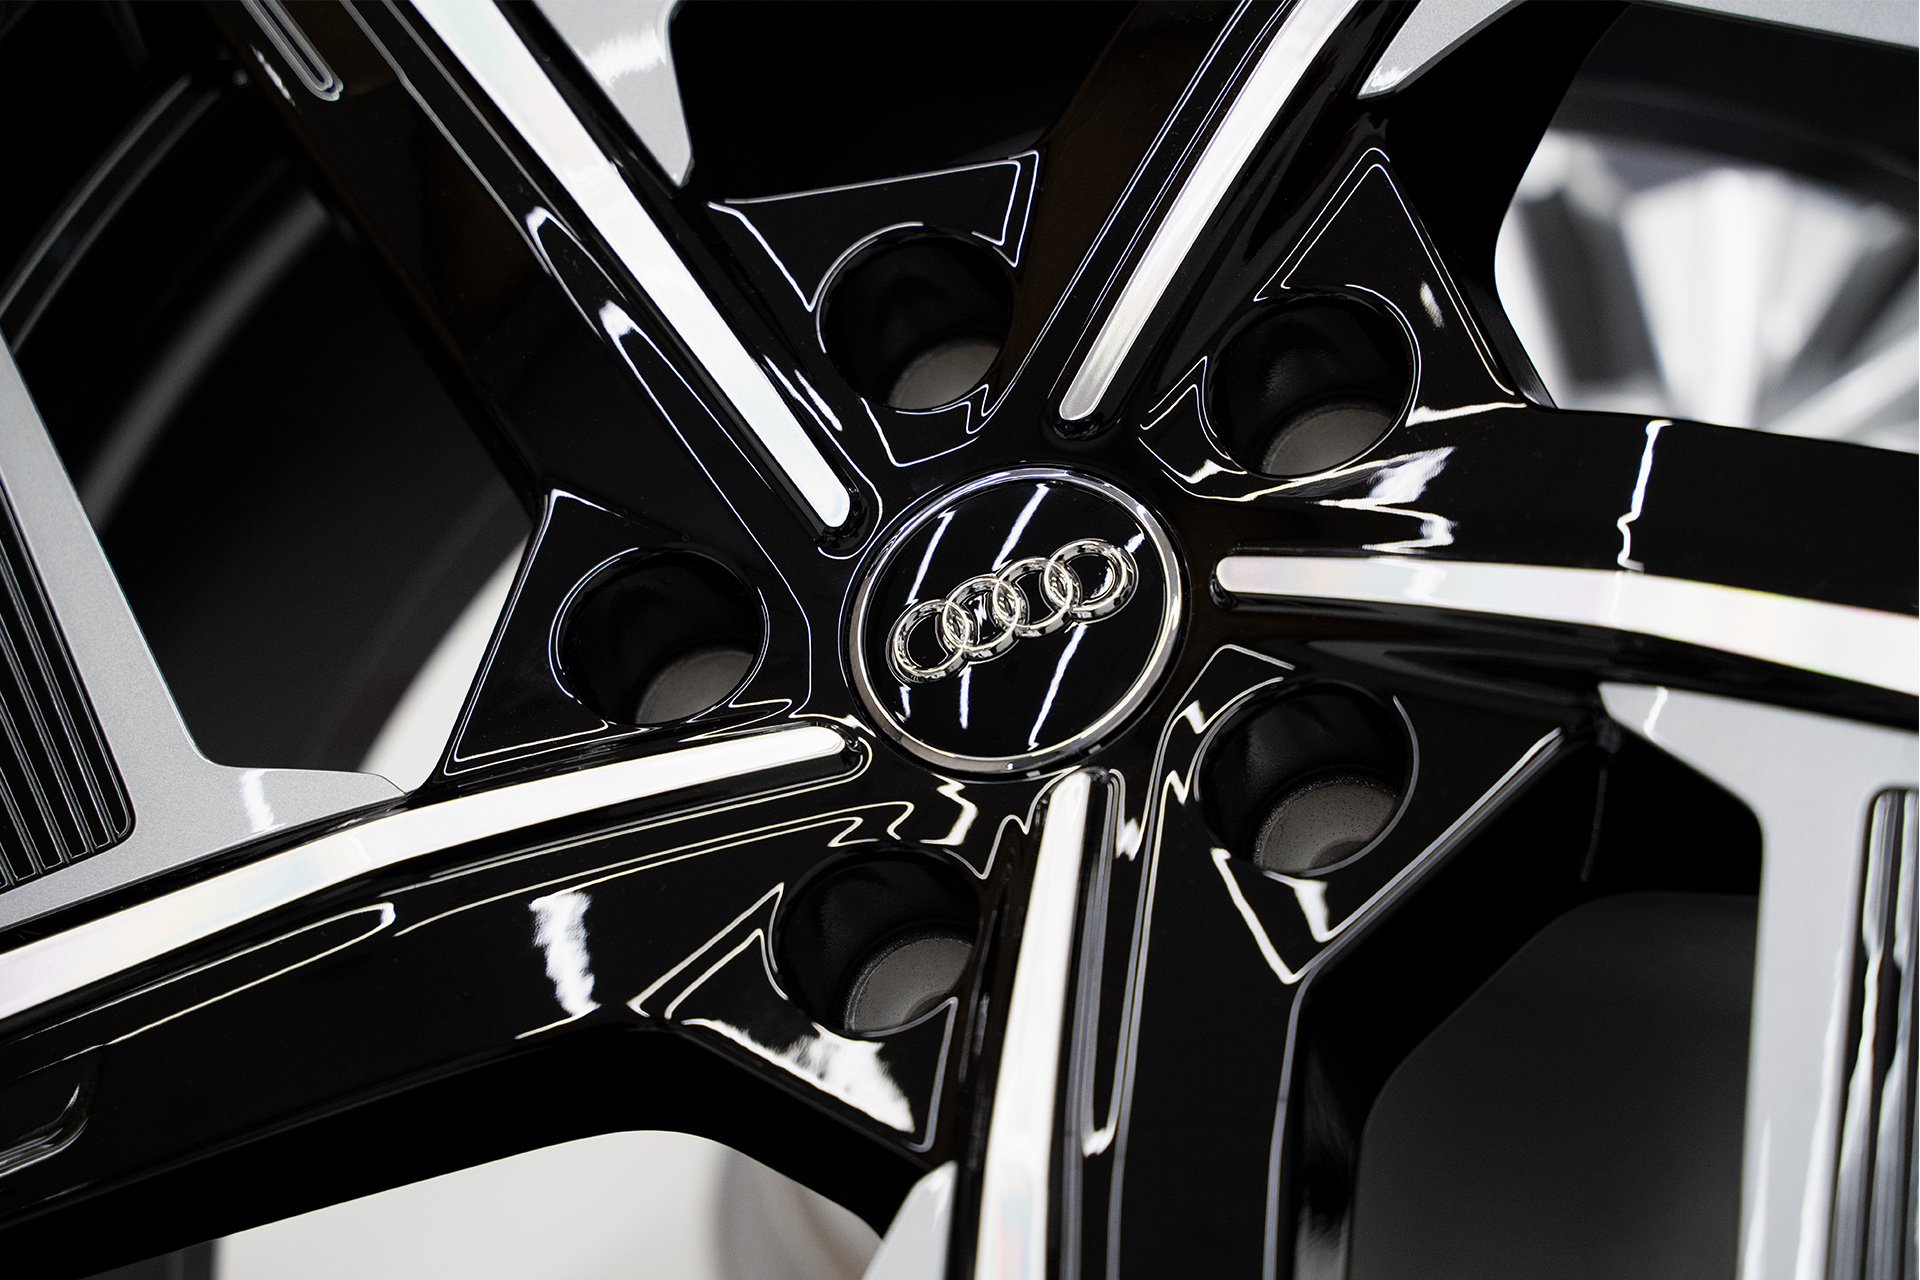 Detailbild des Audi Aerorades.